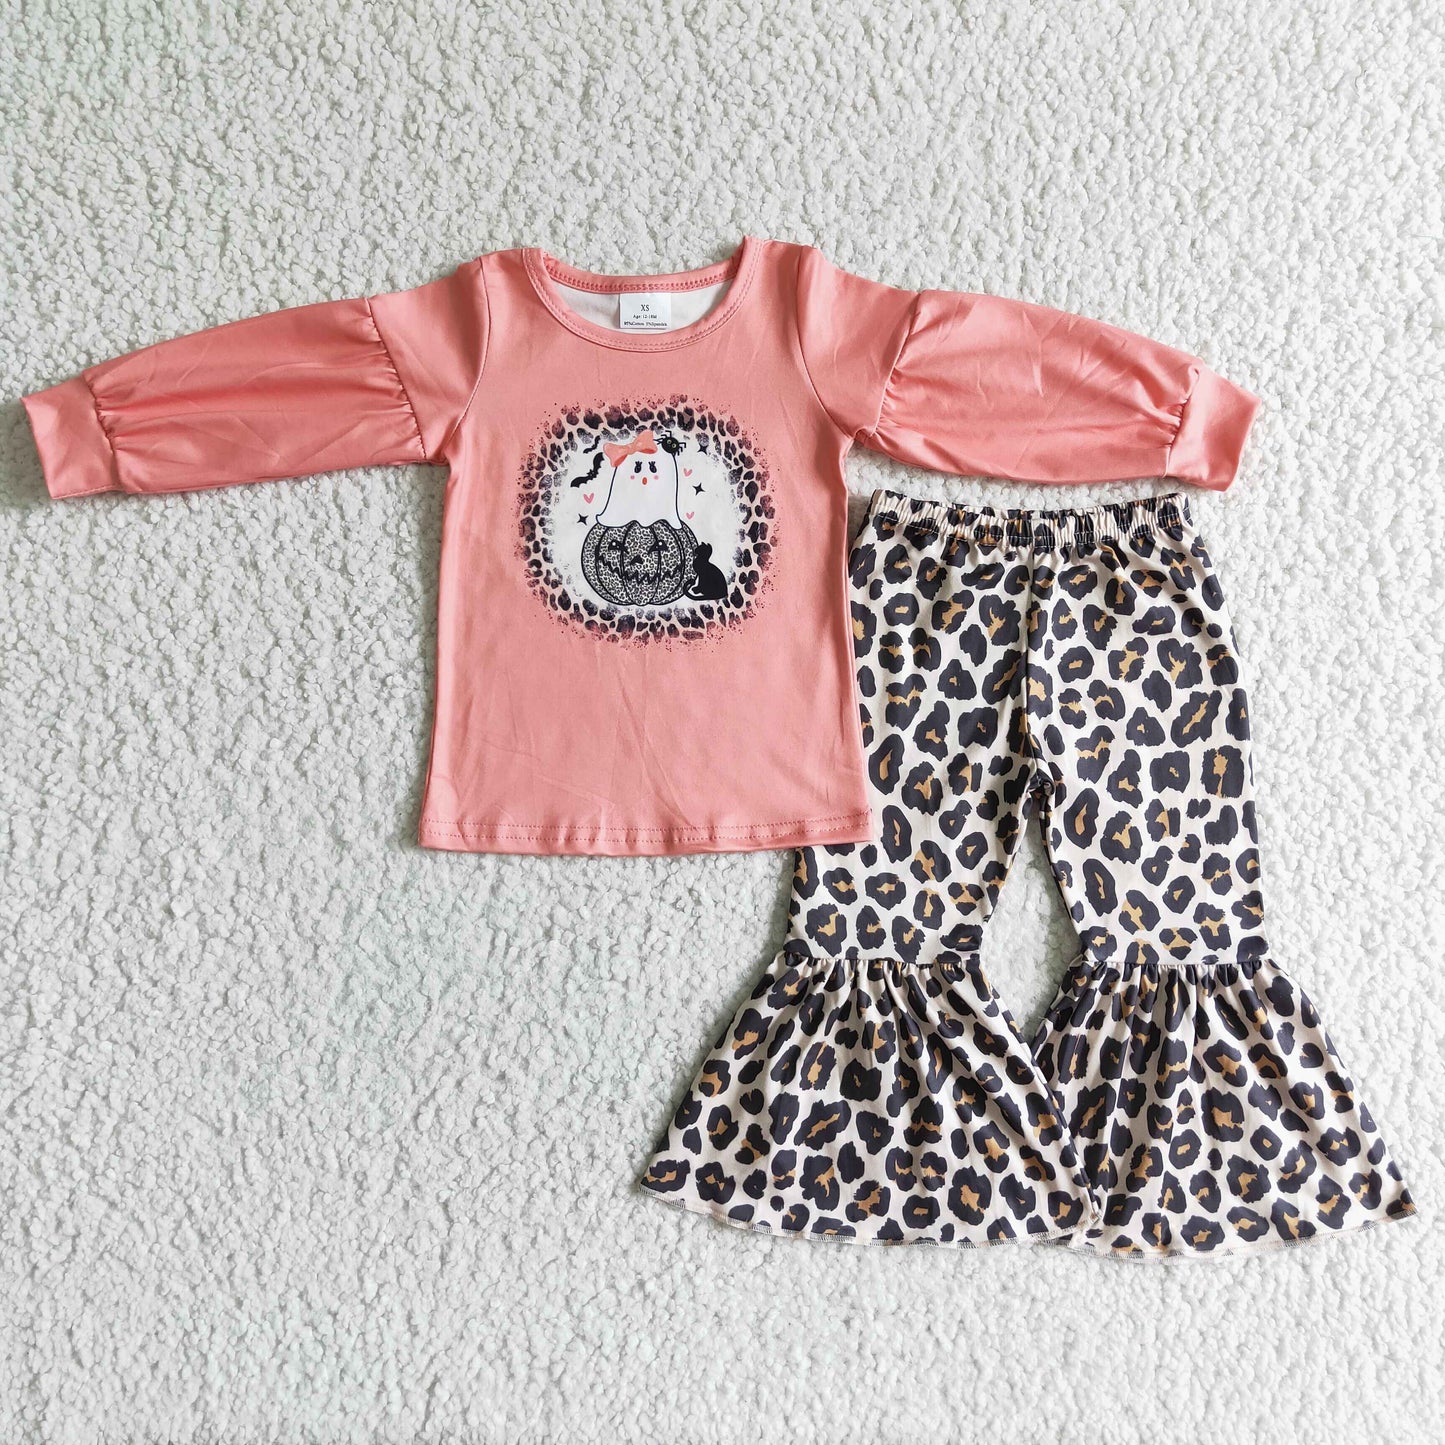 Ghost pumpkin leopard pants girls Halloween clothing set